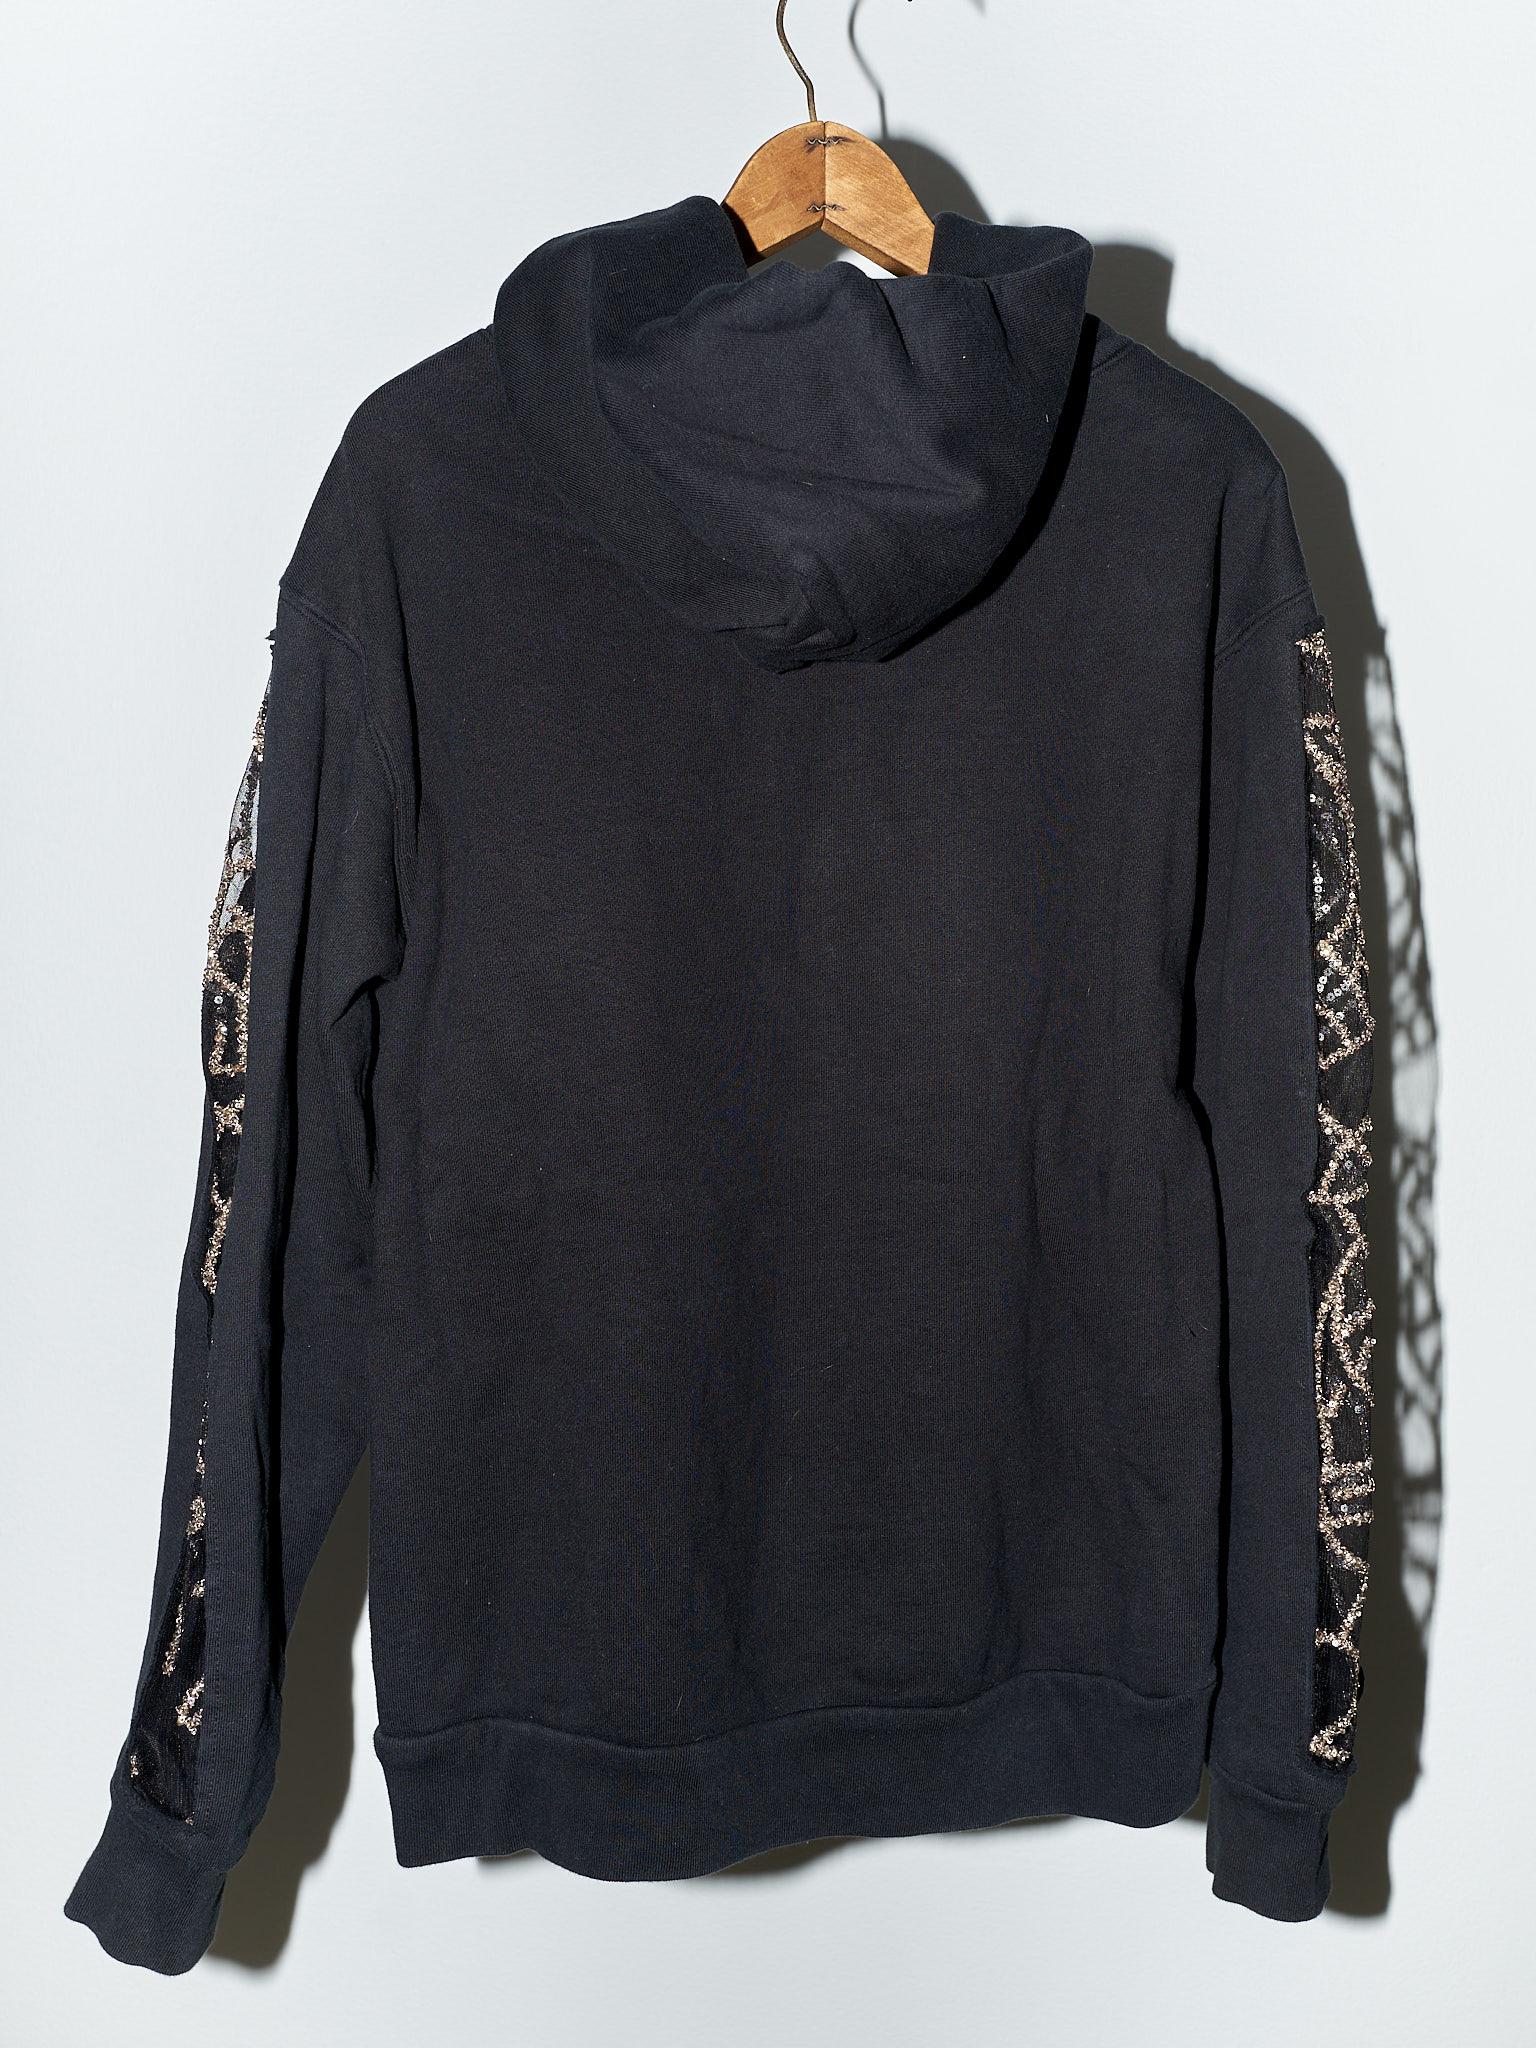 Black Hoodie Sweatshirt Embellished Chrystal Black J Dauphin 8